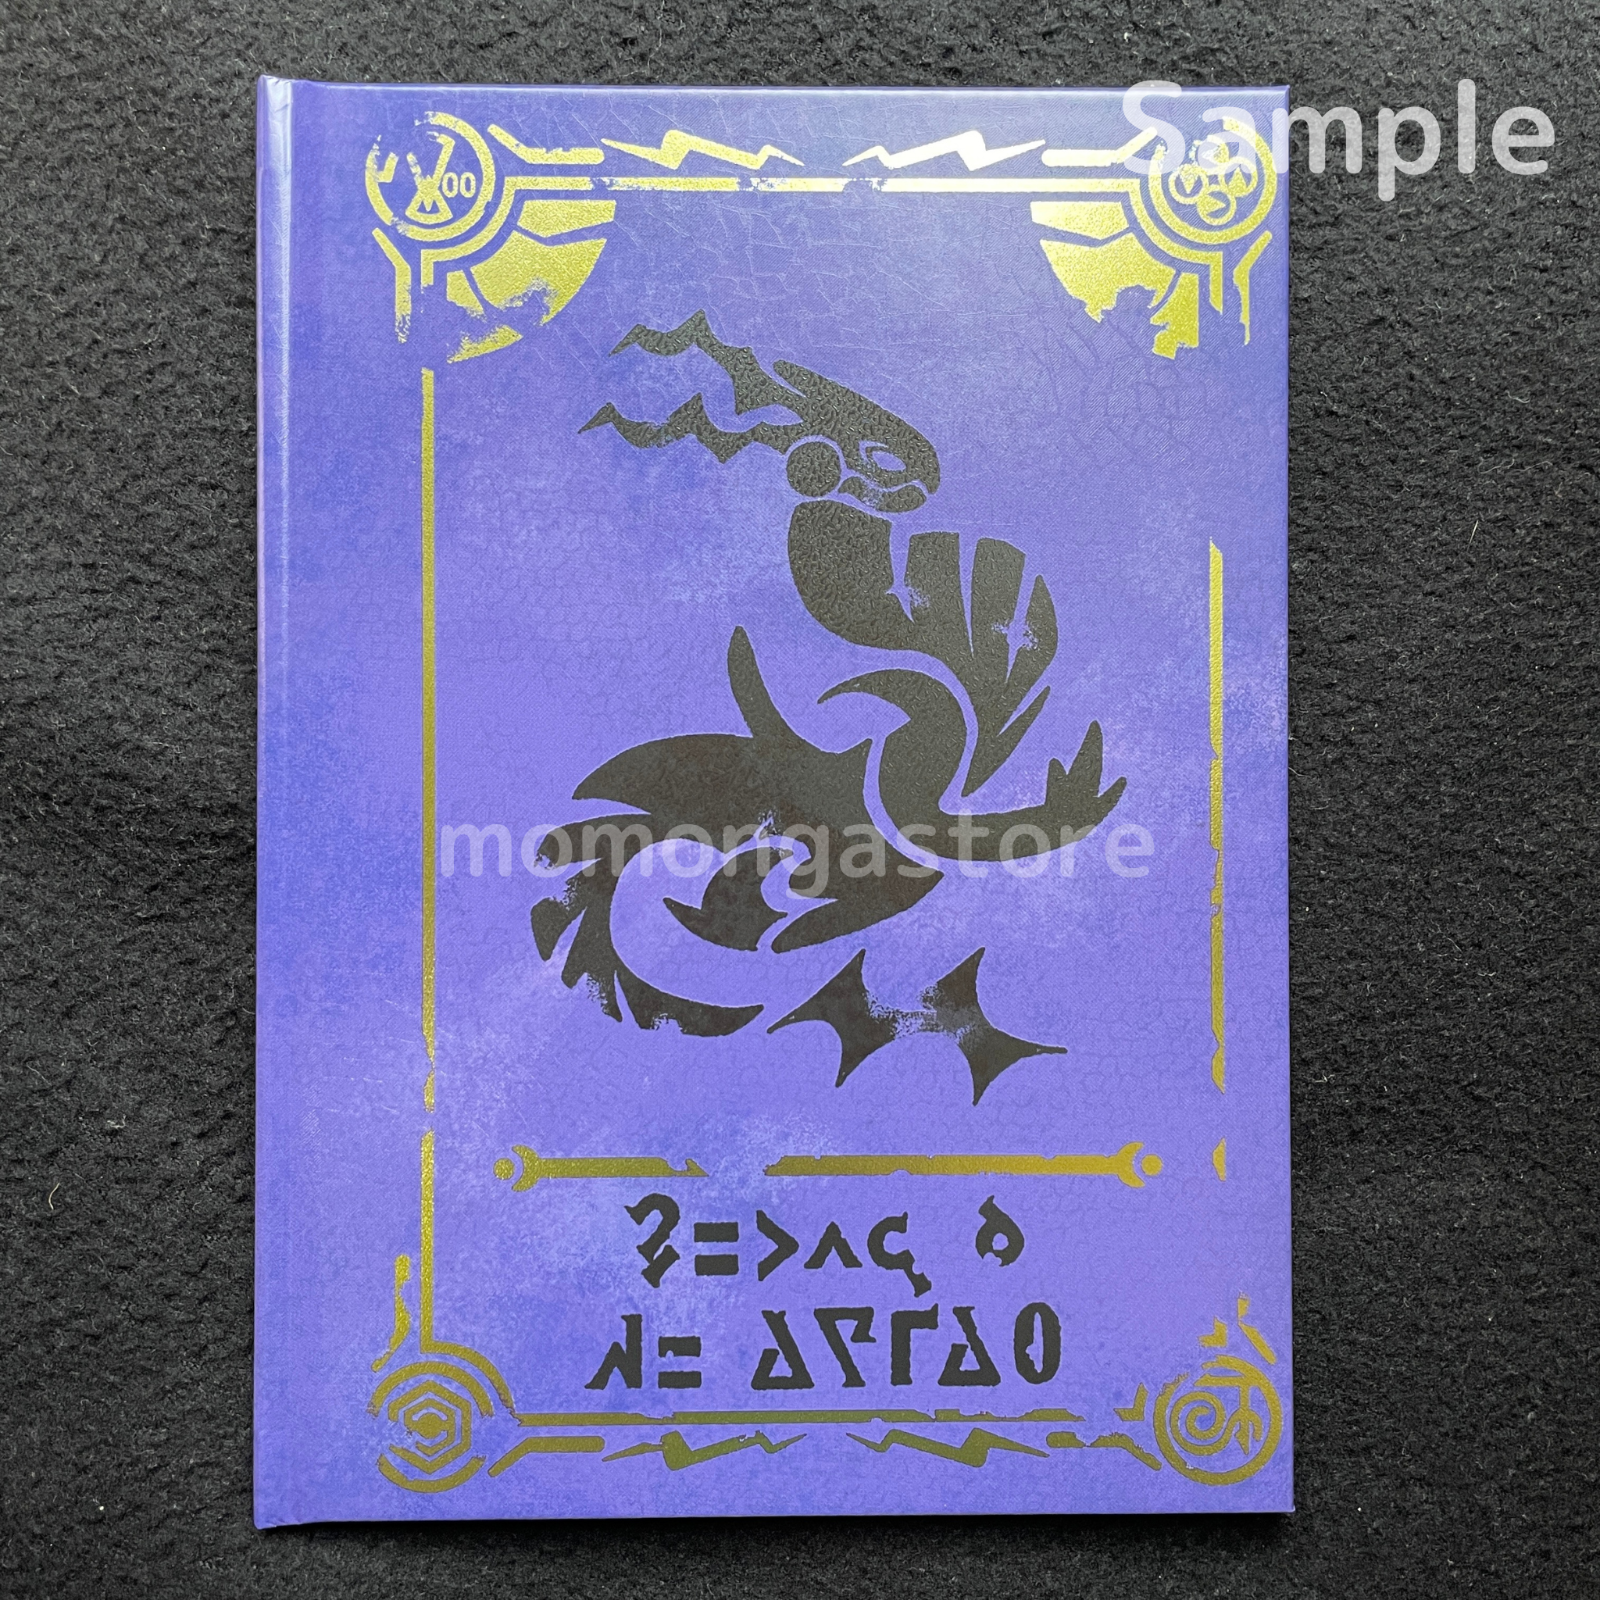 Sealed Pokemon Scarlet & Violet Art books + Pokemon Center Limited Card Set Pokémon Center Does not apply - фотография #15